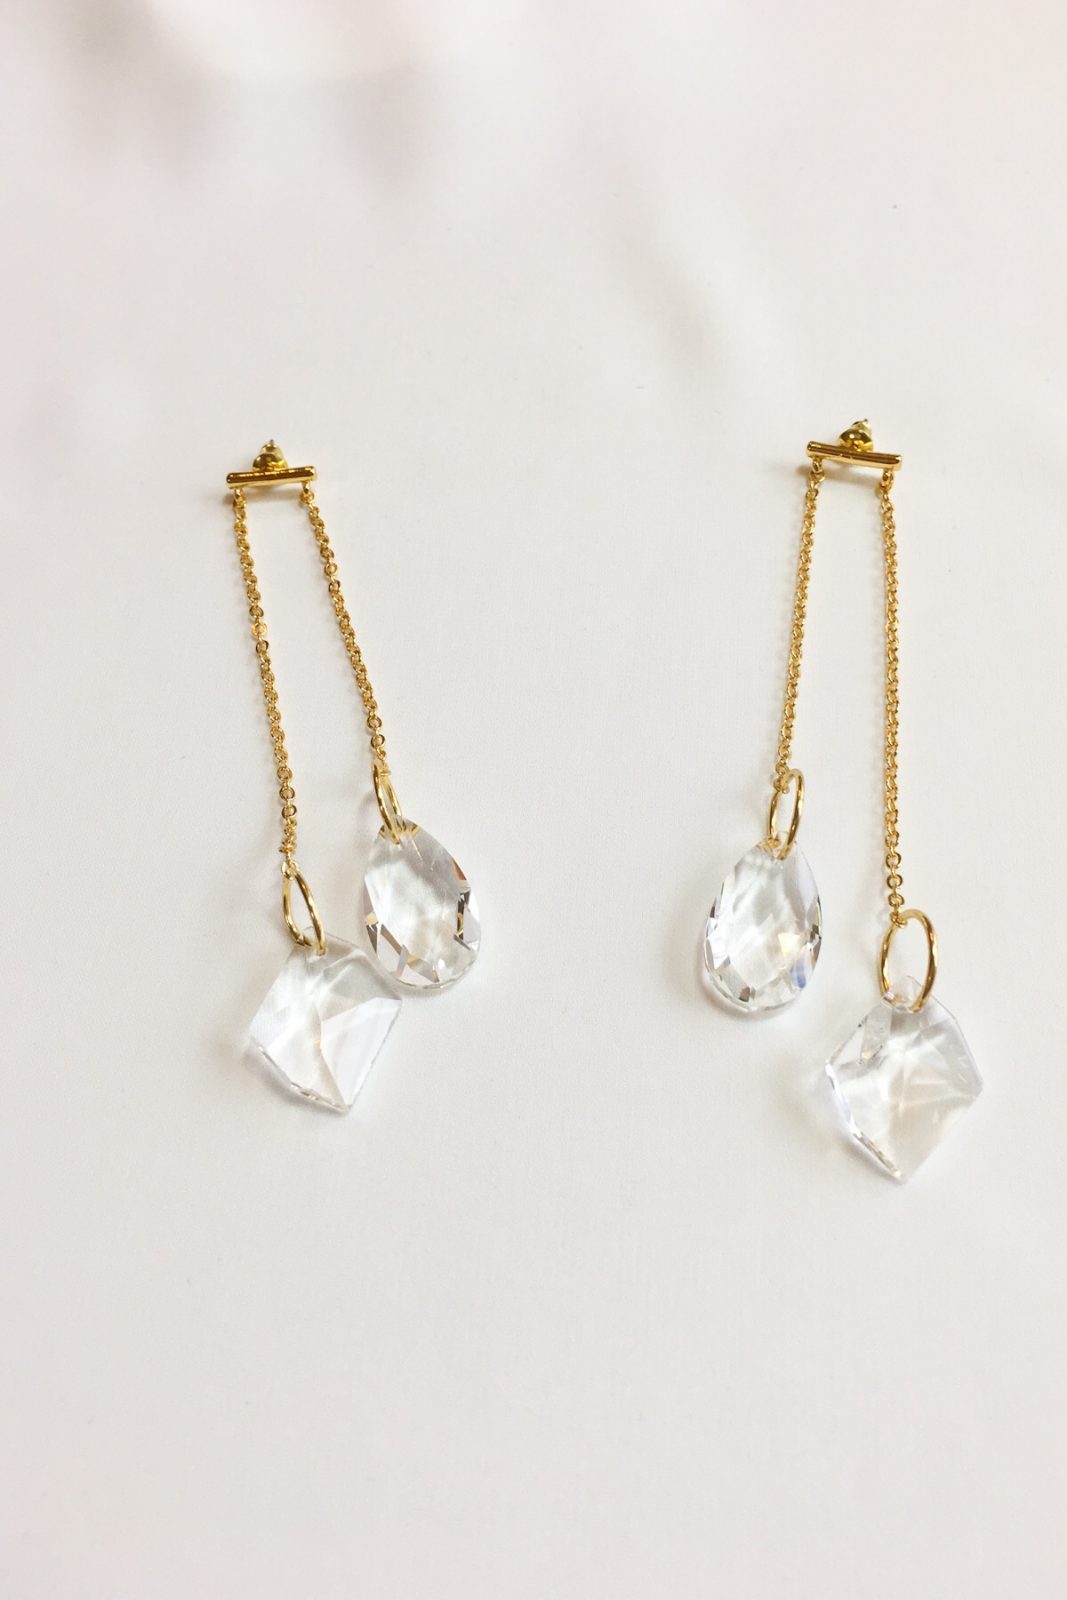 SKYE modern minimalist women fashion accessories Lumiere 18K Gold Austrian Crystal Drop Earrings 3